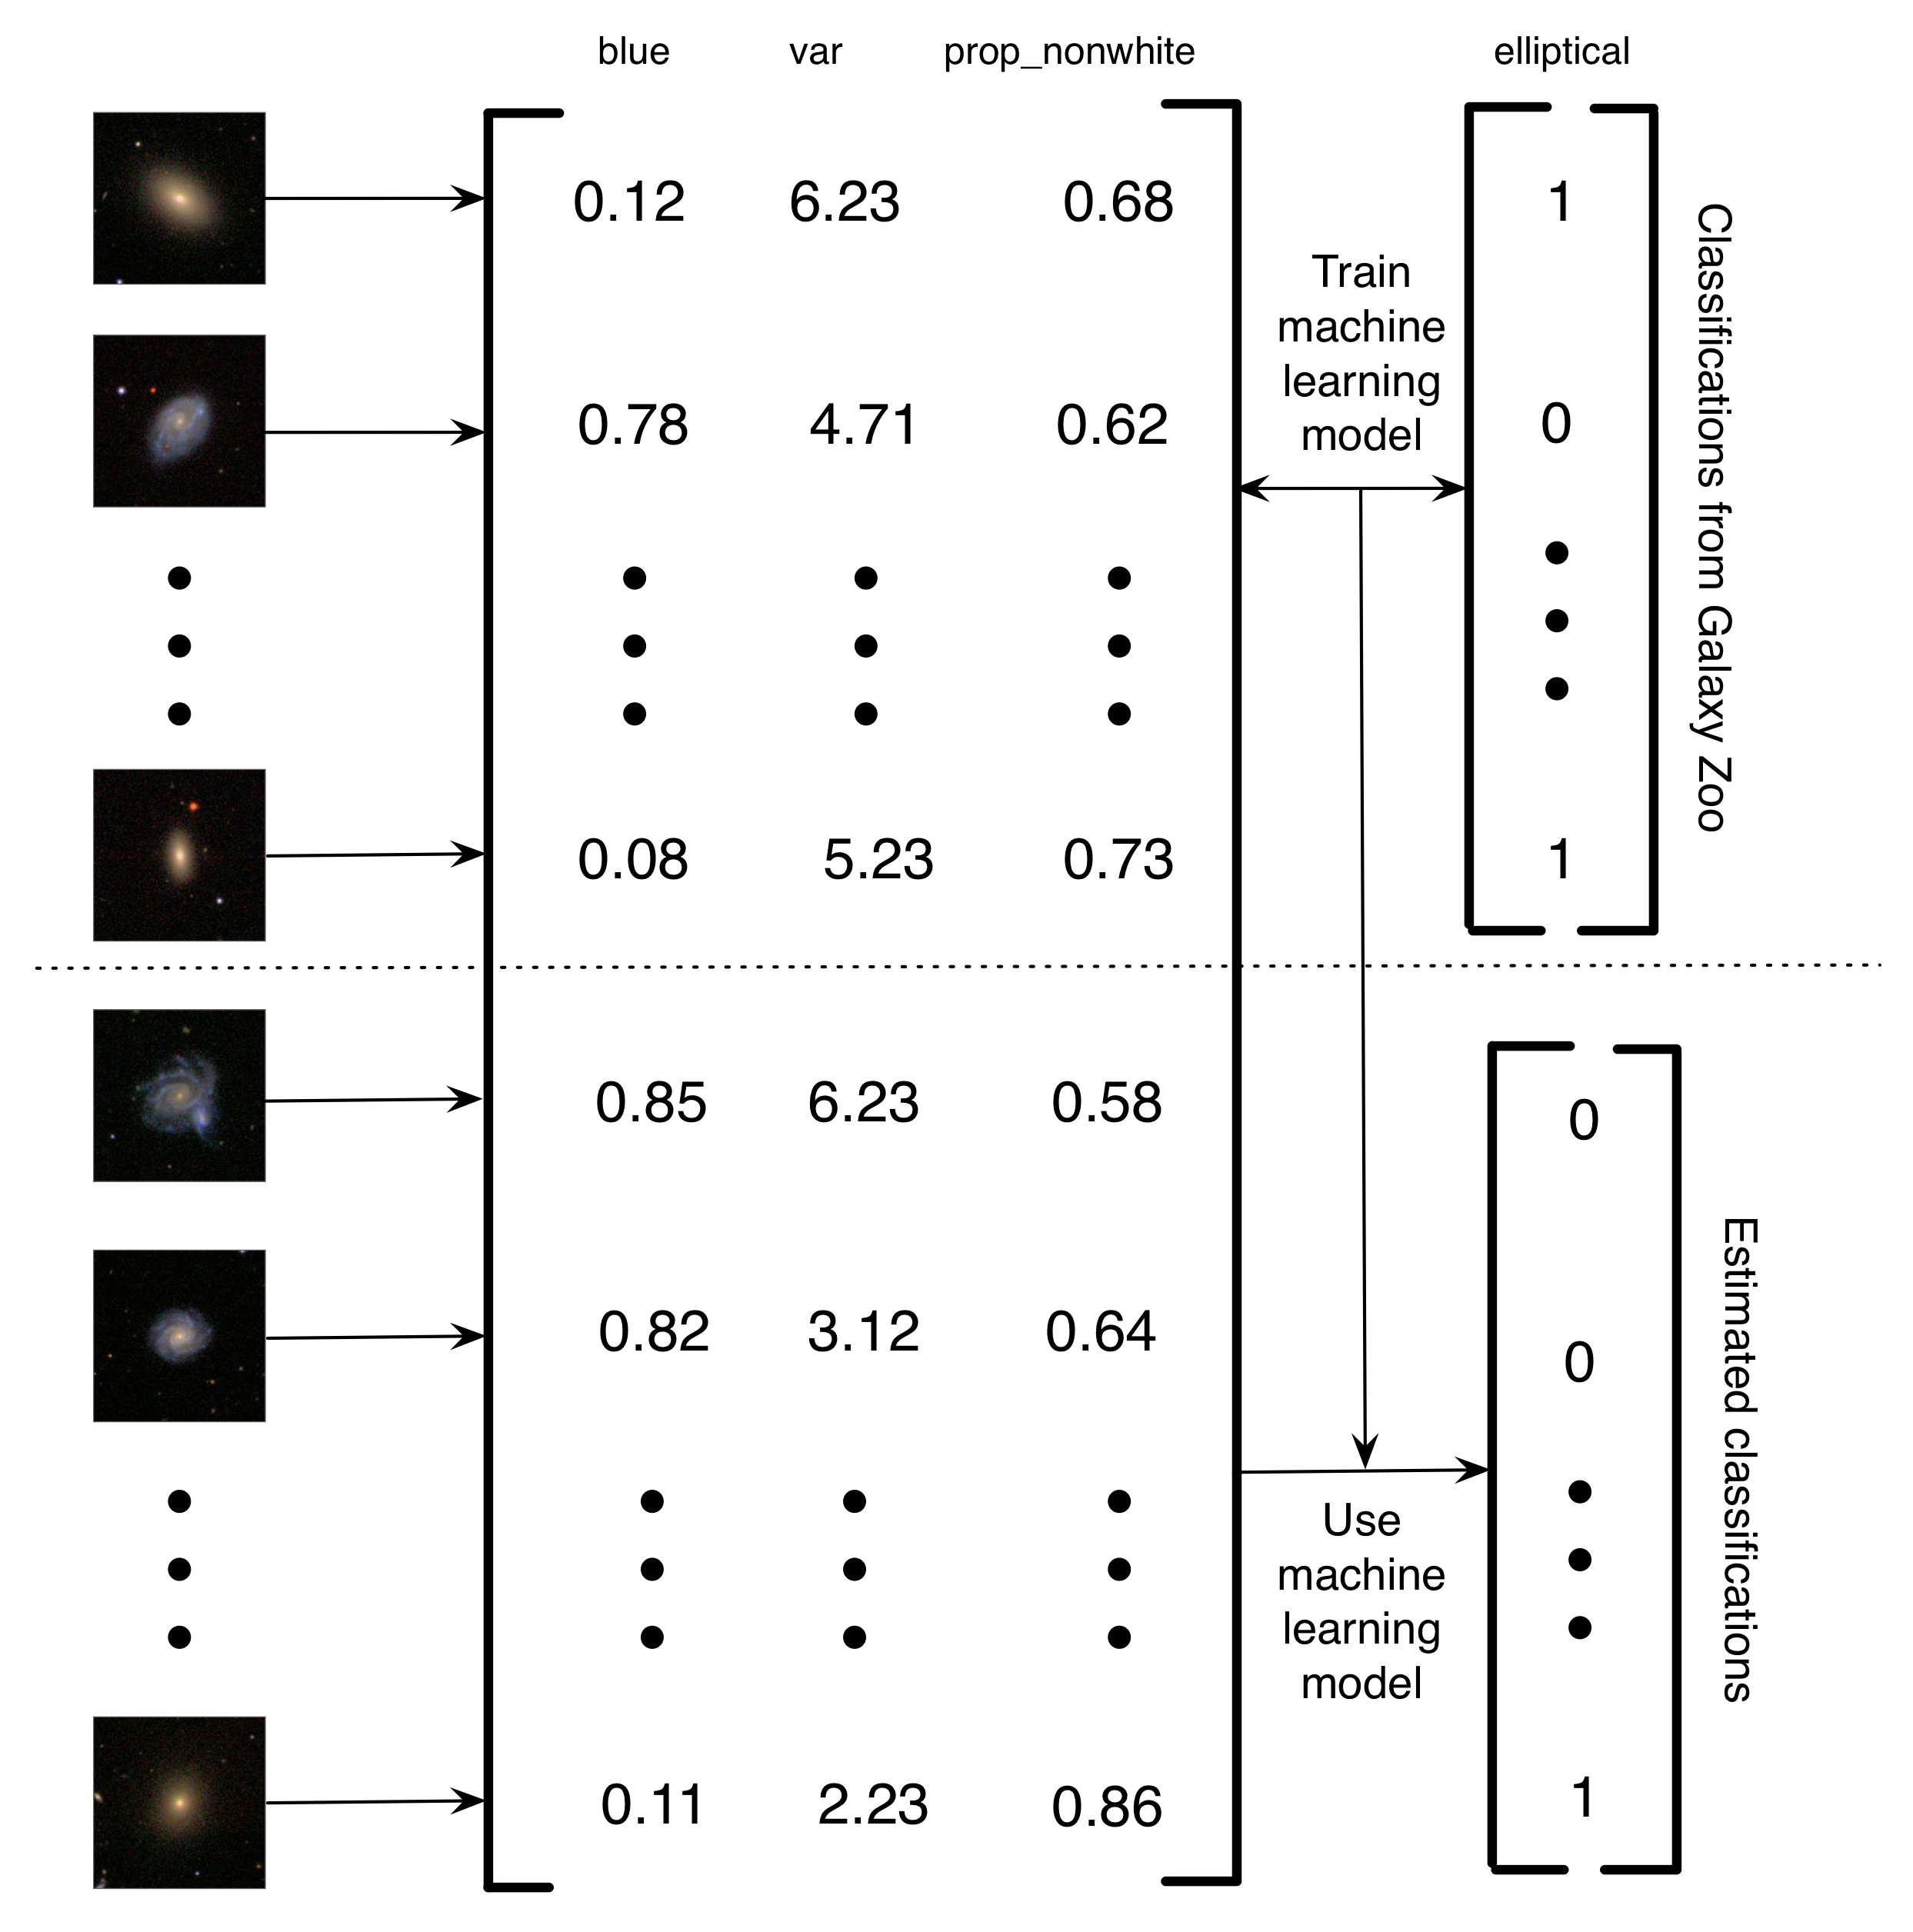 Slika 5.4: Pojednostavljeni opis načina na koji Banerji i sar. (2010) je koristio Galaxy Zoo klasifikacije kako bi obučio model za učenje mašina kako bi klasifikovao galaksiju. Slike galaksija pretvorene su u matricu karakteristika. U ovom pojednostavljenom primeru postoje tri funkcije (količina plave slike, varijanse osvetljenosti piksela i procenat nebelih piksela). Zatim, za podskup slike, oznake Galaxy Zoo se koriste za obuku modela za učenje mašina. Konačno, mašinsko učenje se koristi za procjenu klasifikacija za preostale galaksije. Ja to zovem projektom računarskog humanog računarstva, jer ljudima, a ne ljudima da rešavaju problem, ljudi izgrađuju skup podataka koji se mogu koristiti za obuku računara kako bi riješili problem. Prednost ovog računarskog humanog računskog sistema jeste da vam omogućava da u suštini podnesete beskonačne količine podataka koristeći samo ograničenu količinu ljudskog napora. Slike galaksija reprodukovane dozvolom Sloan Digital Sky Survey.